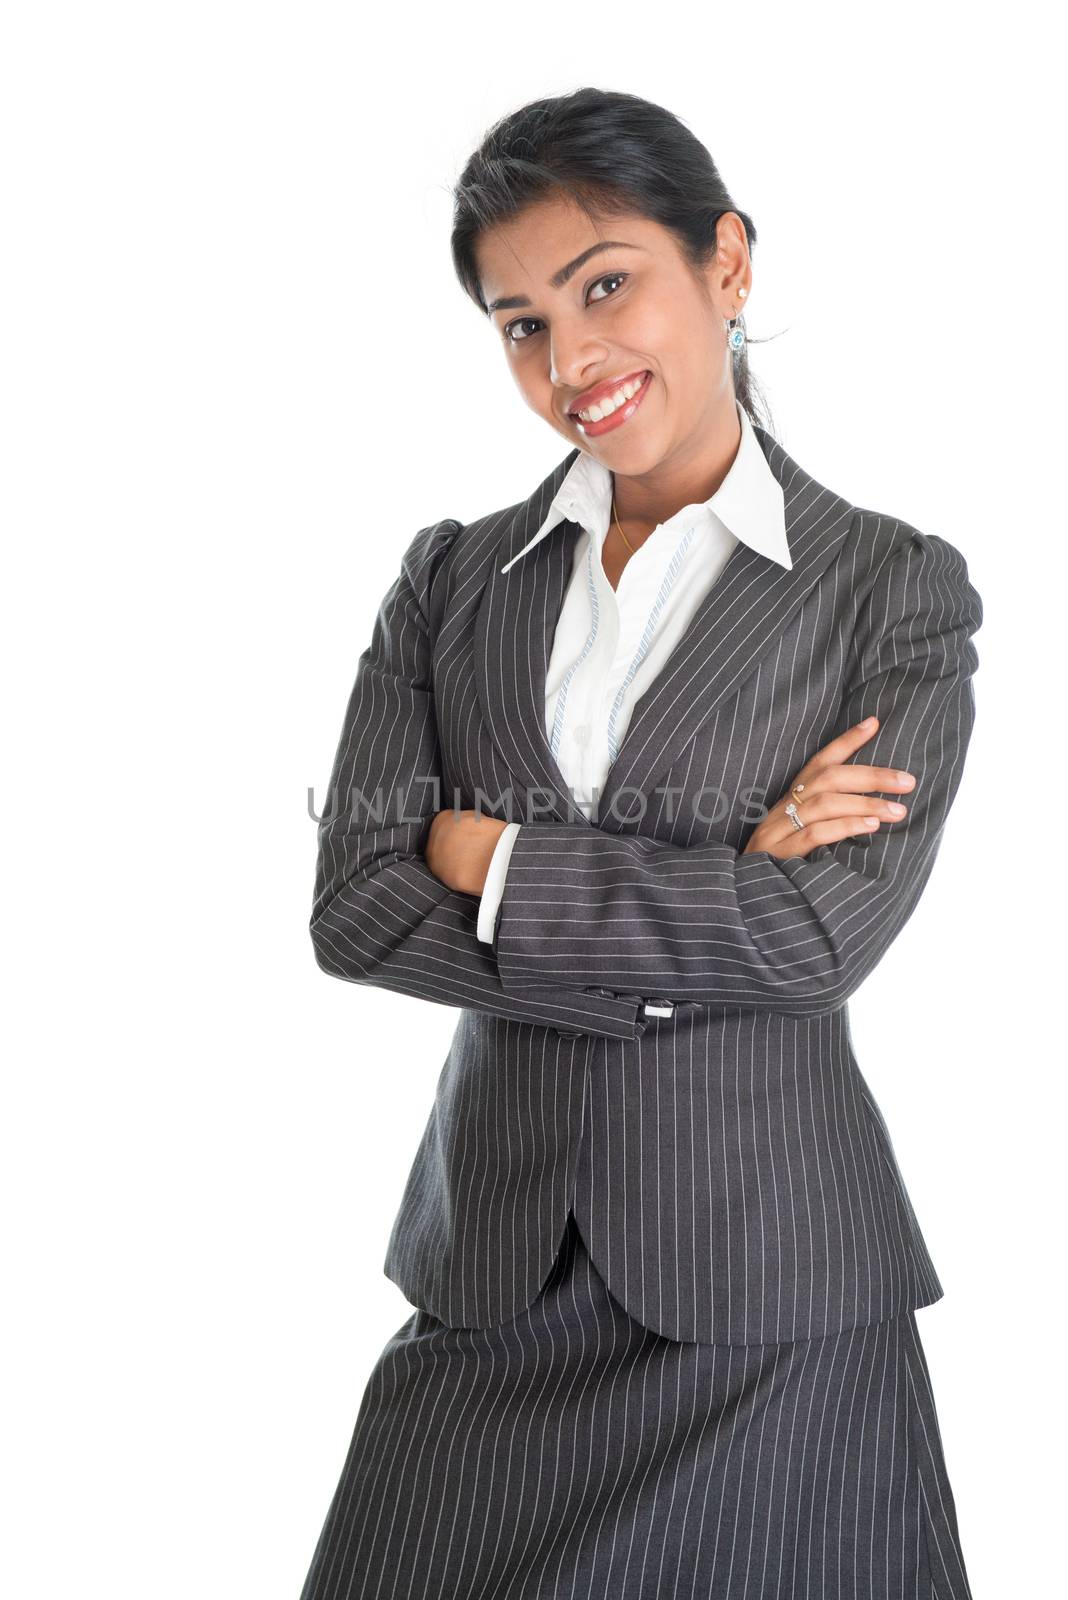 Black businesswoman smiling by szefei